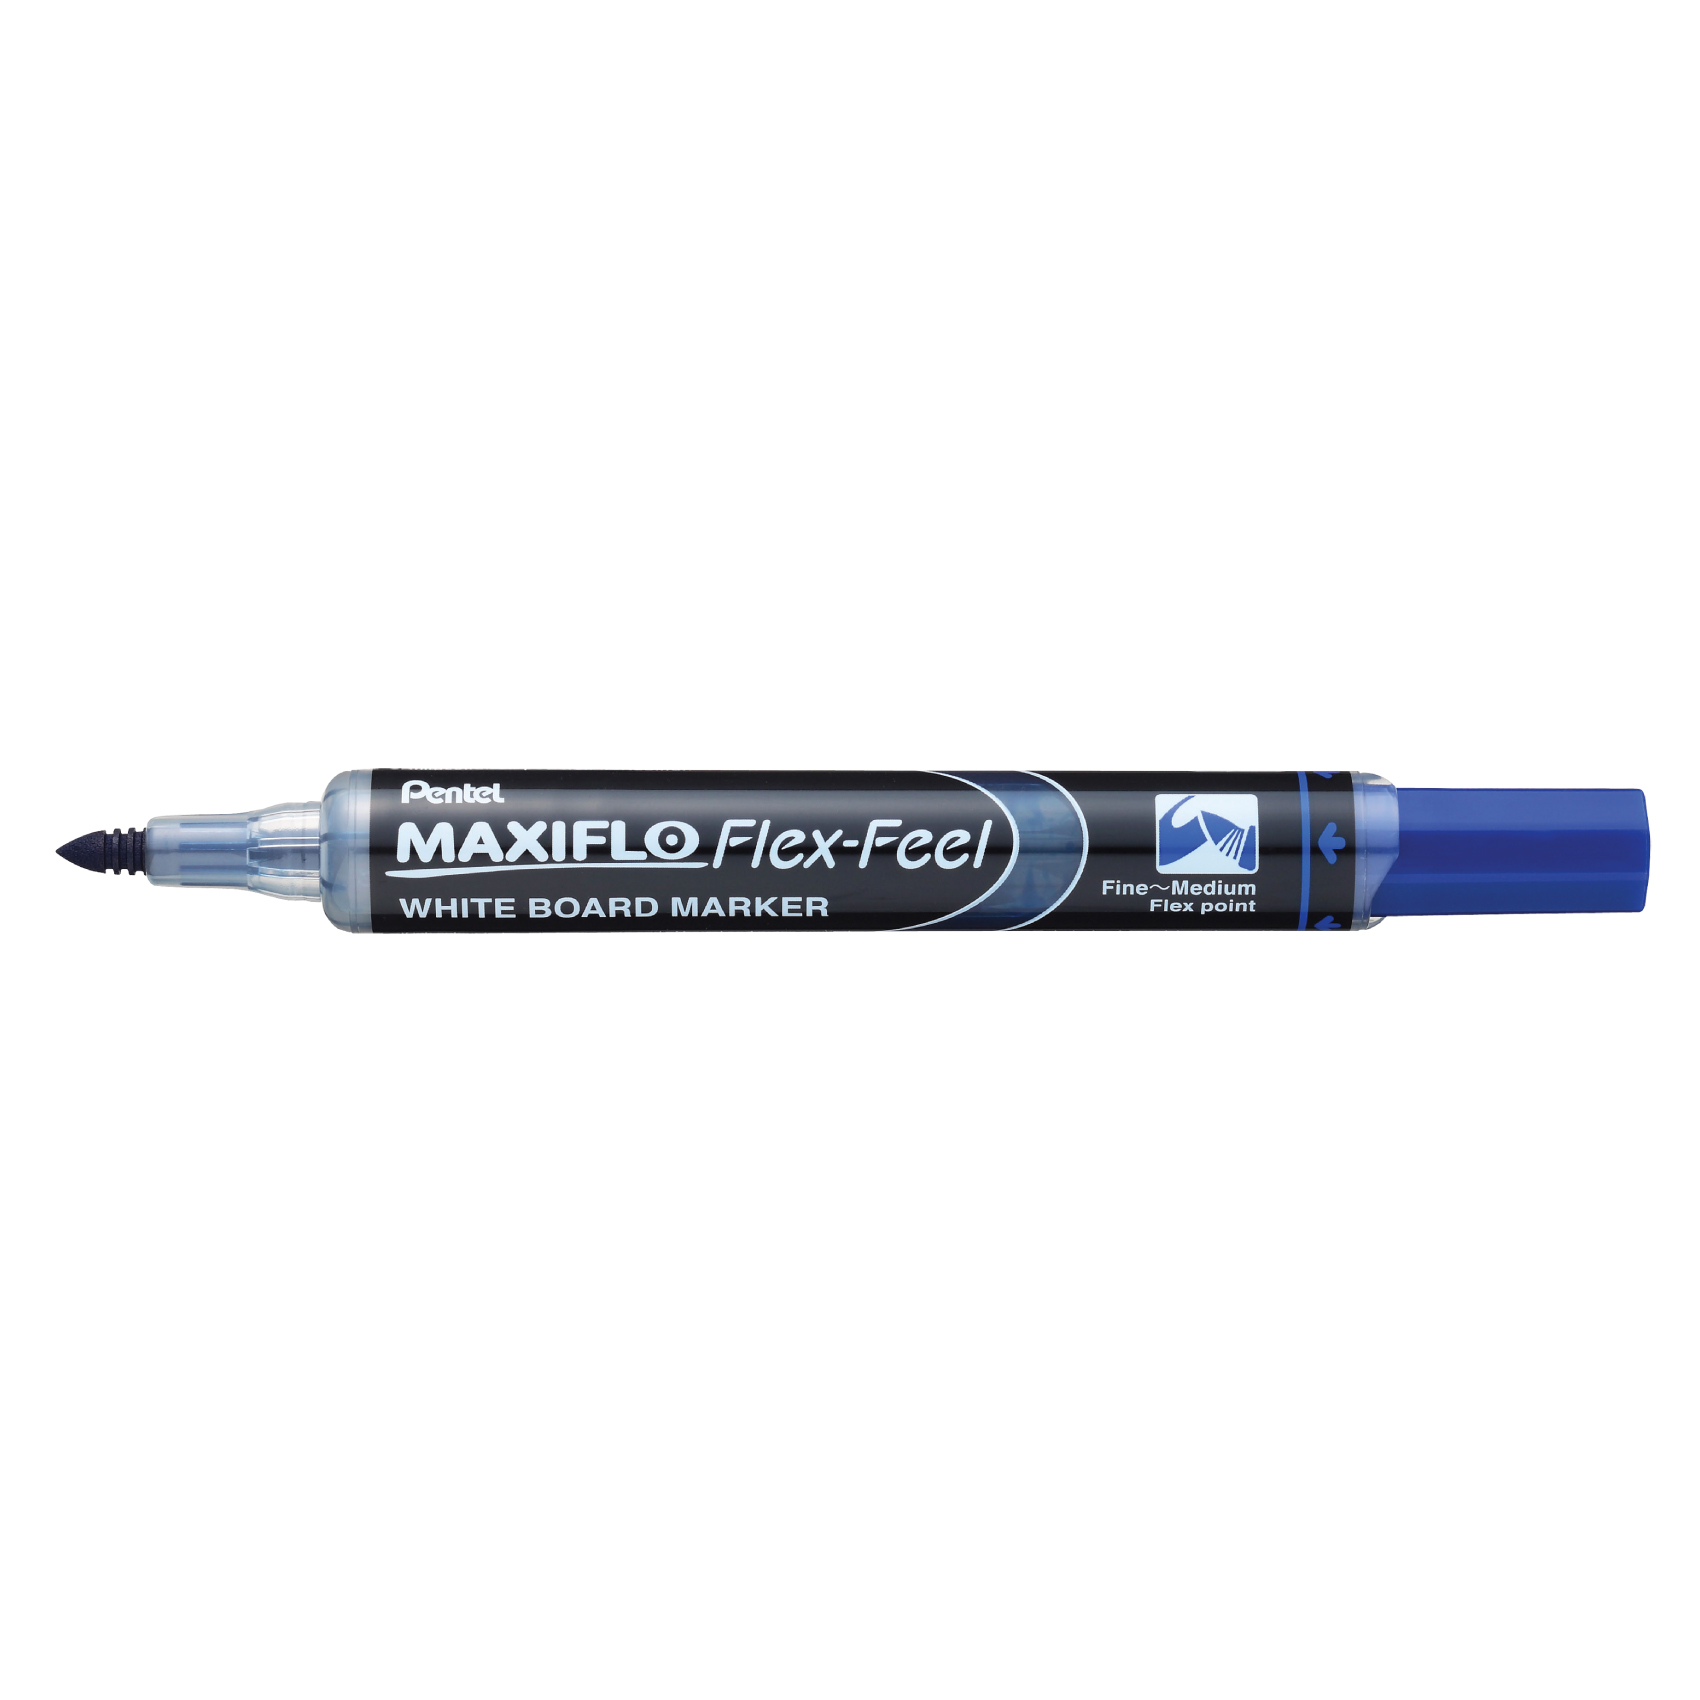 Maxiflo Wb Marker Flex-Feel Be